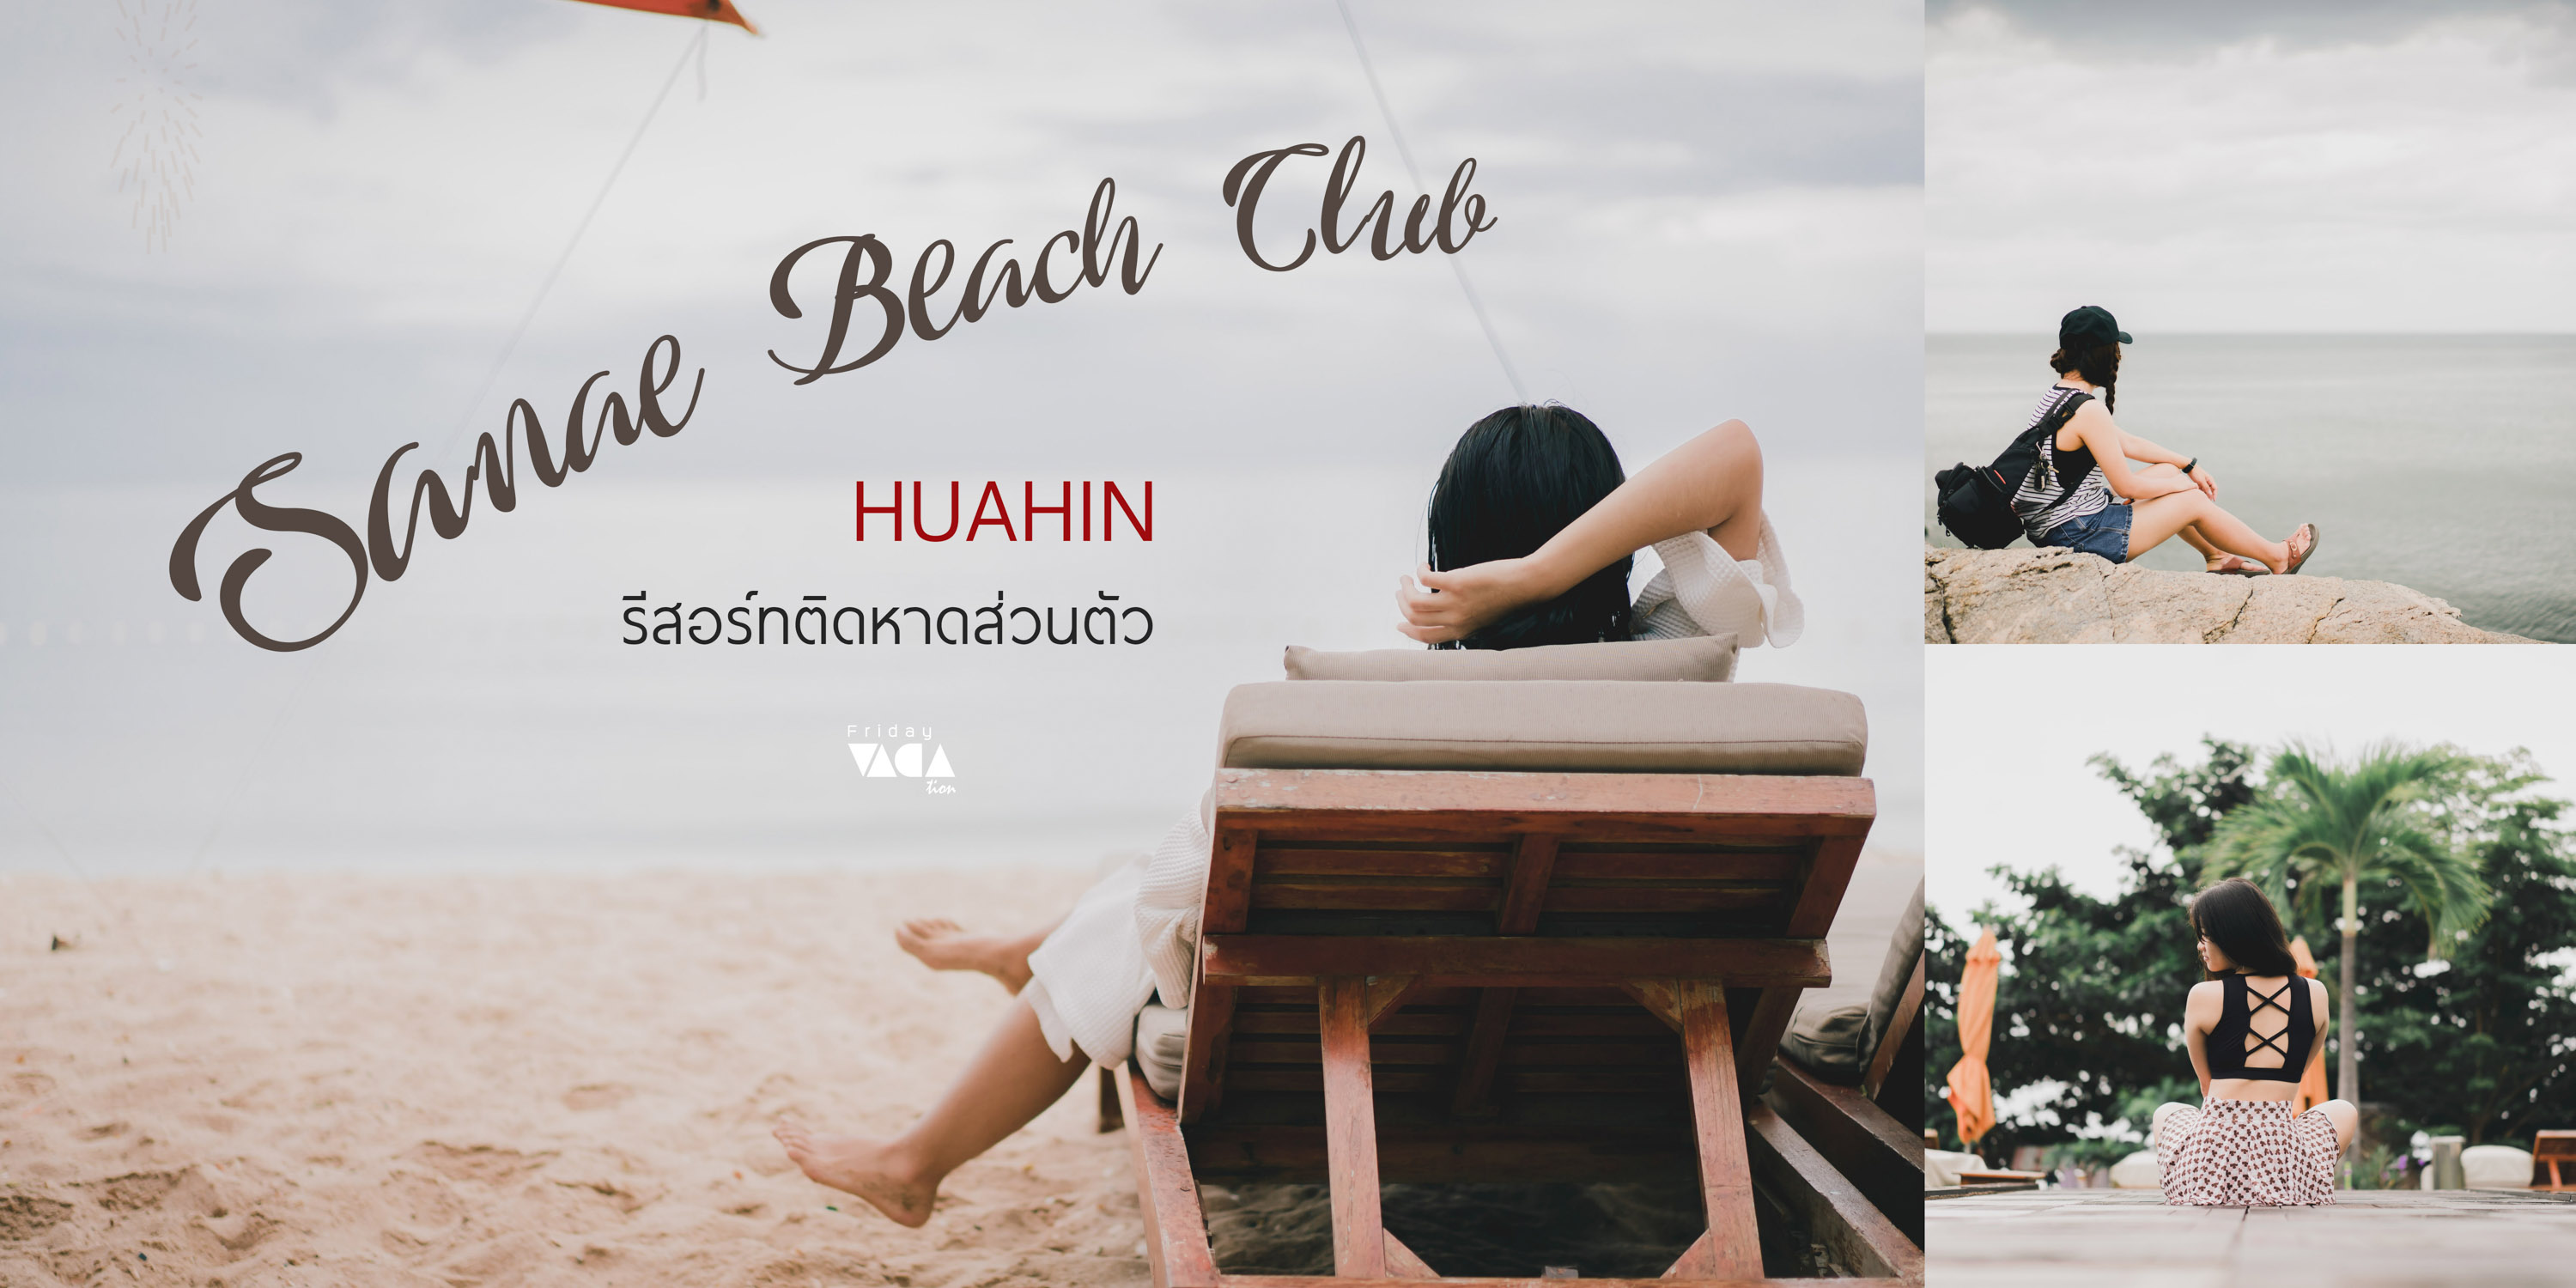 Sanae Beach Club Huahin